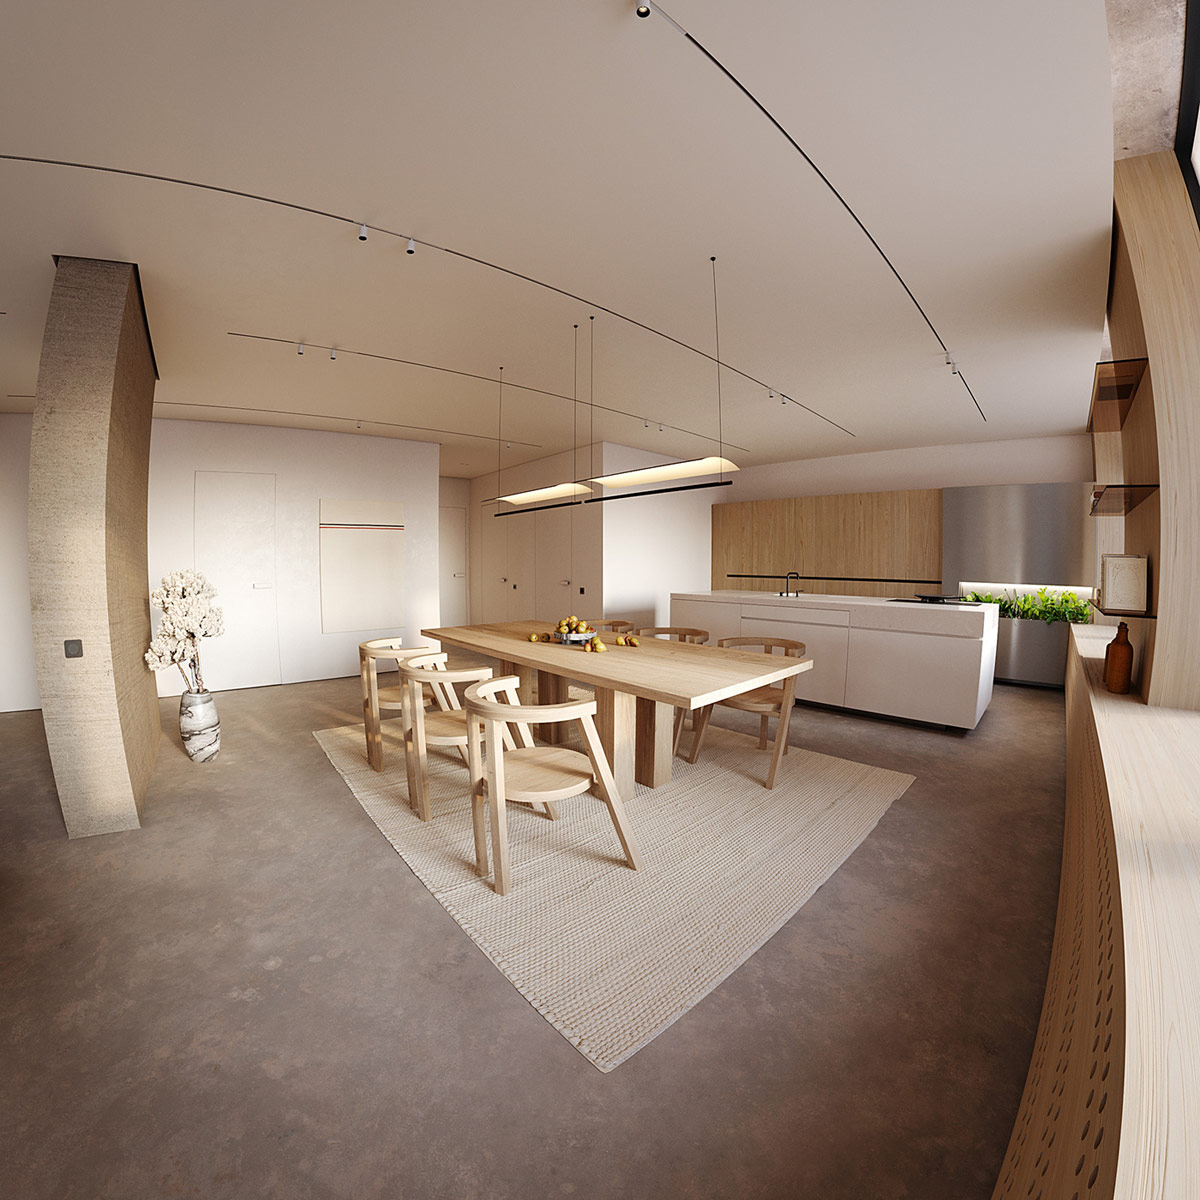 宁静温馨的105平现代公寓空间设计